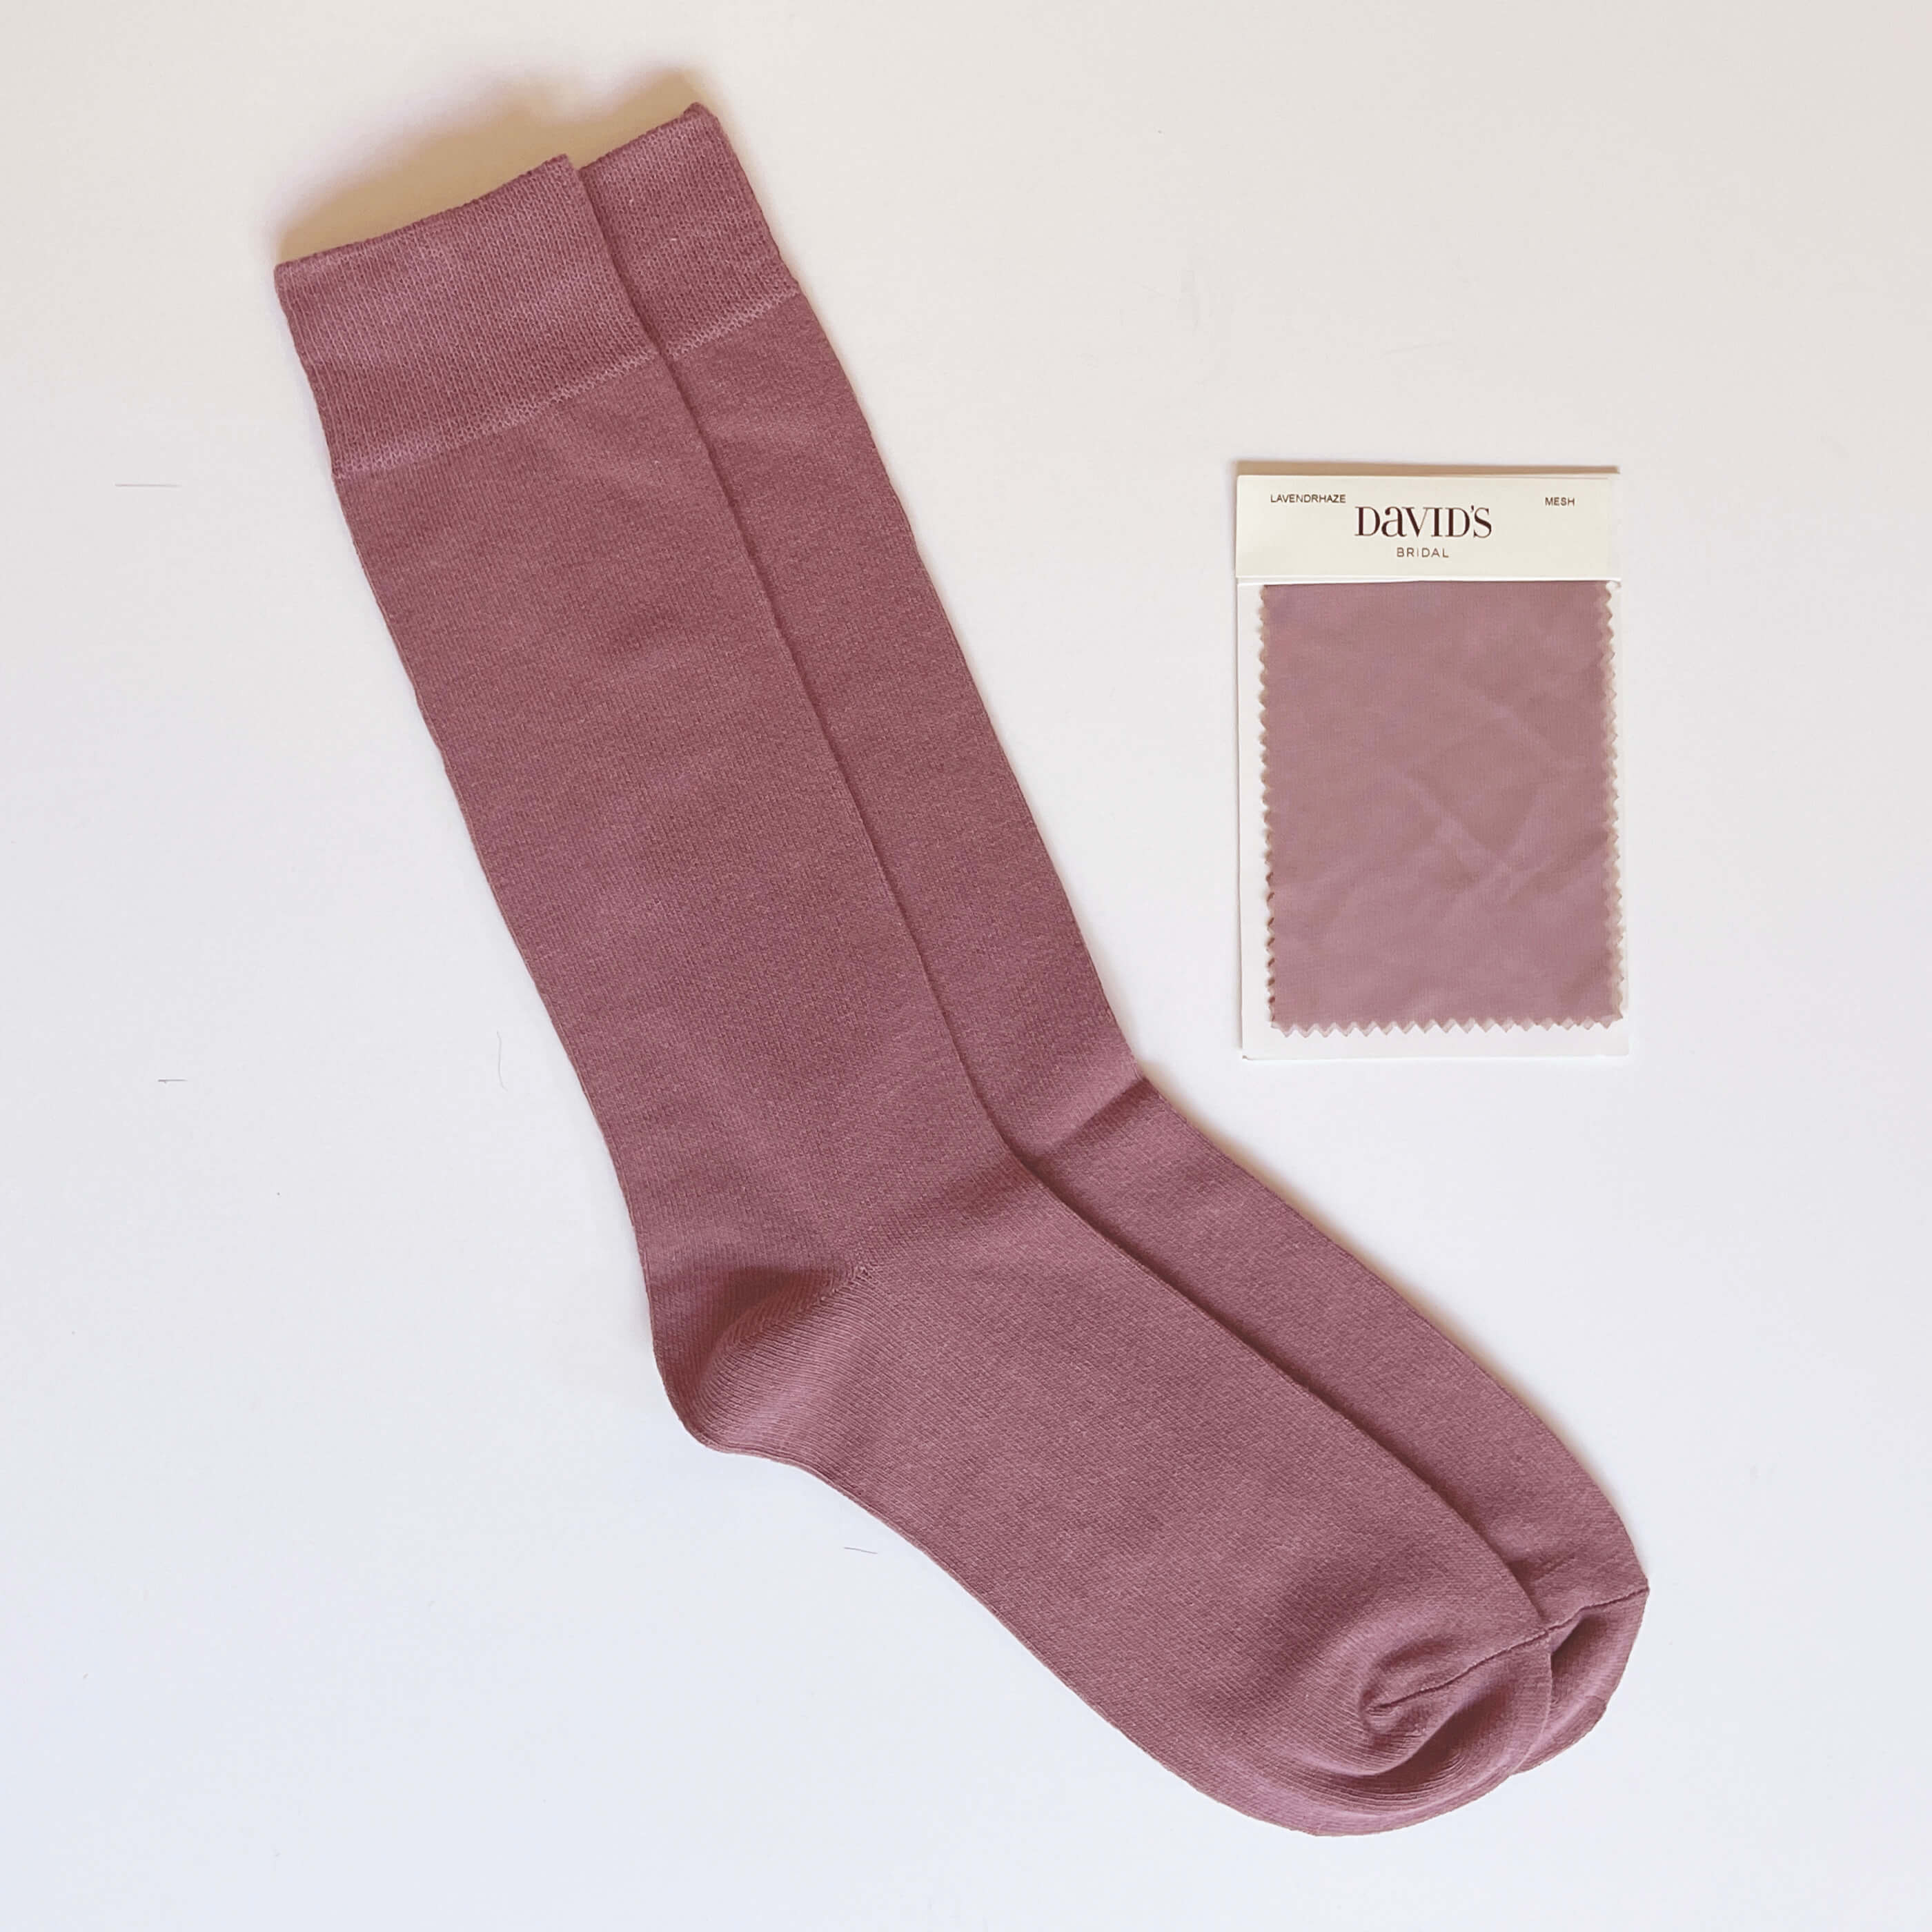 Similar to LAVENDER-HAZE (Davids Bridal) Mens/Groomsmen's Socks